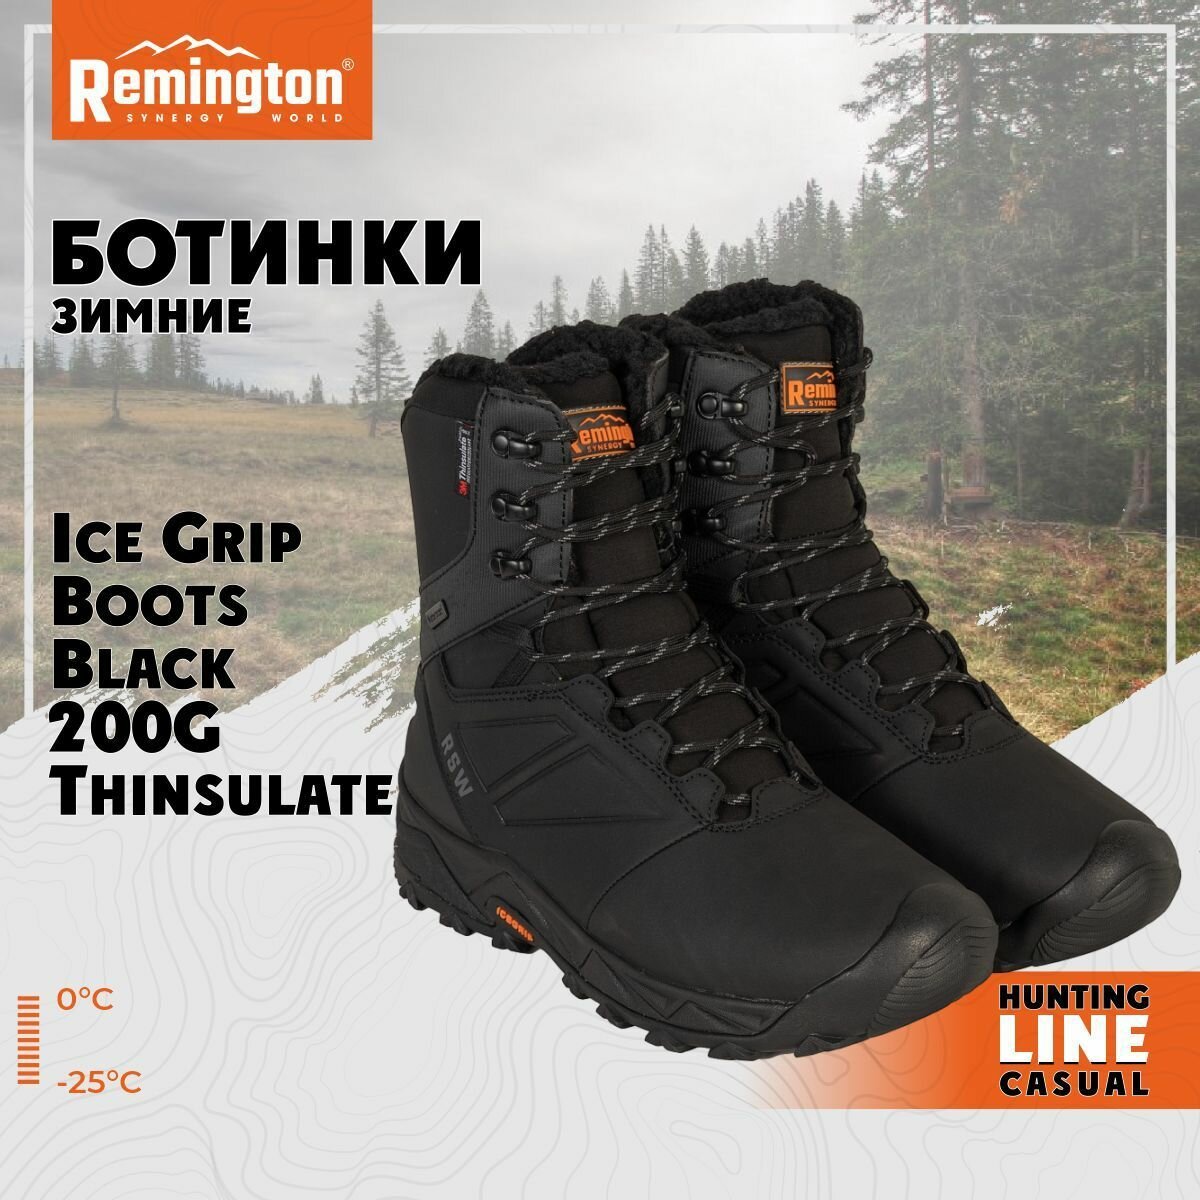 Ботинки Remington Ice Grip Boots Black 200g Thinsulate р. 42 RB2937-010